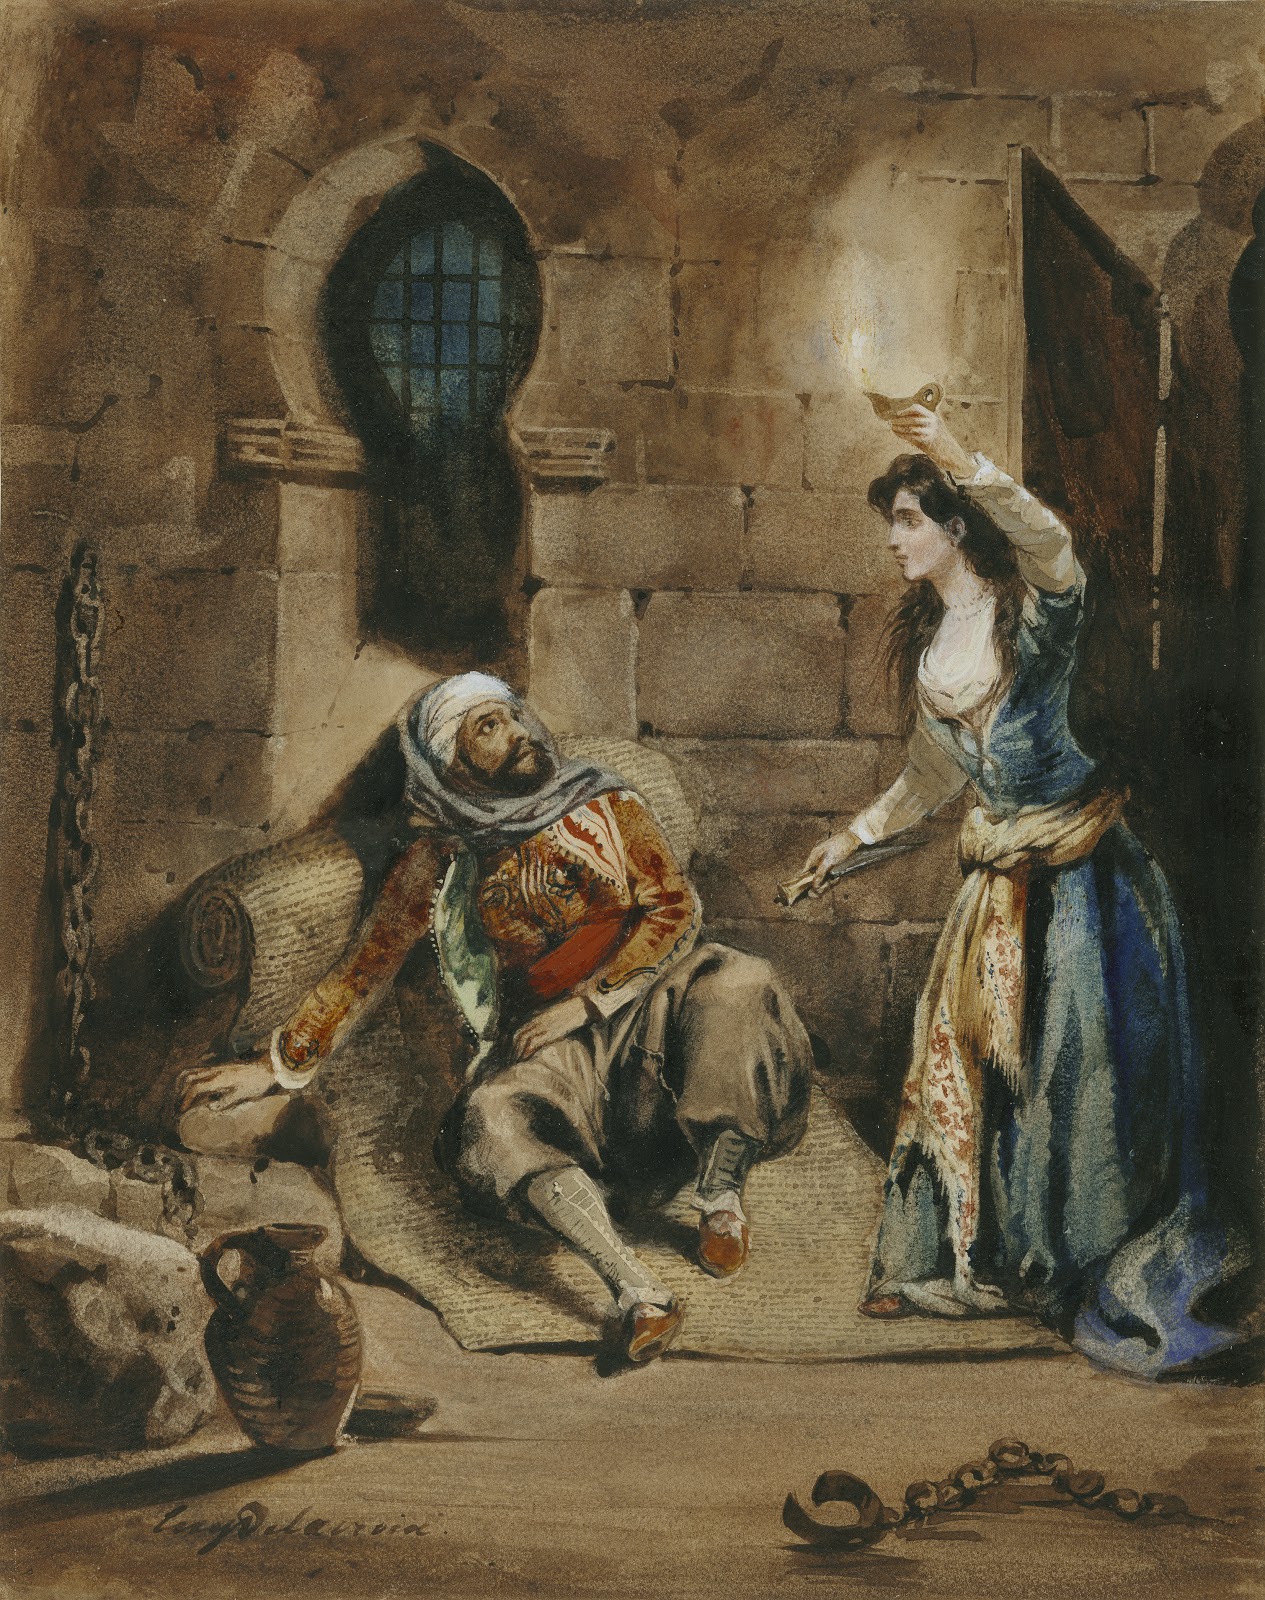 Eugene+Delacroix-1798-1863 (119).jpg